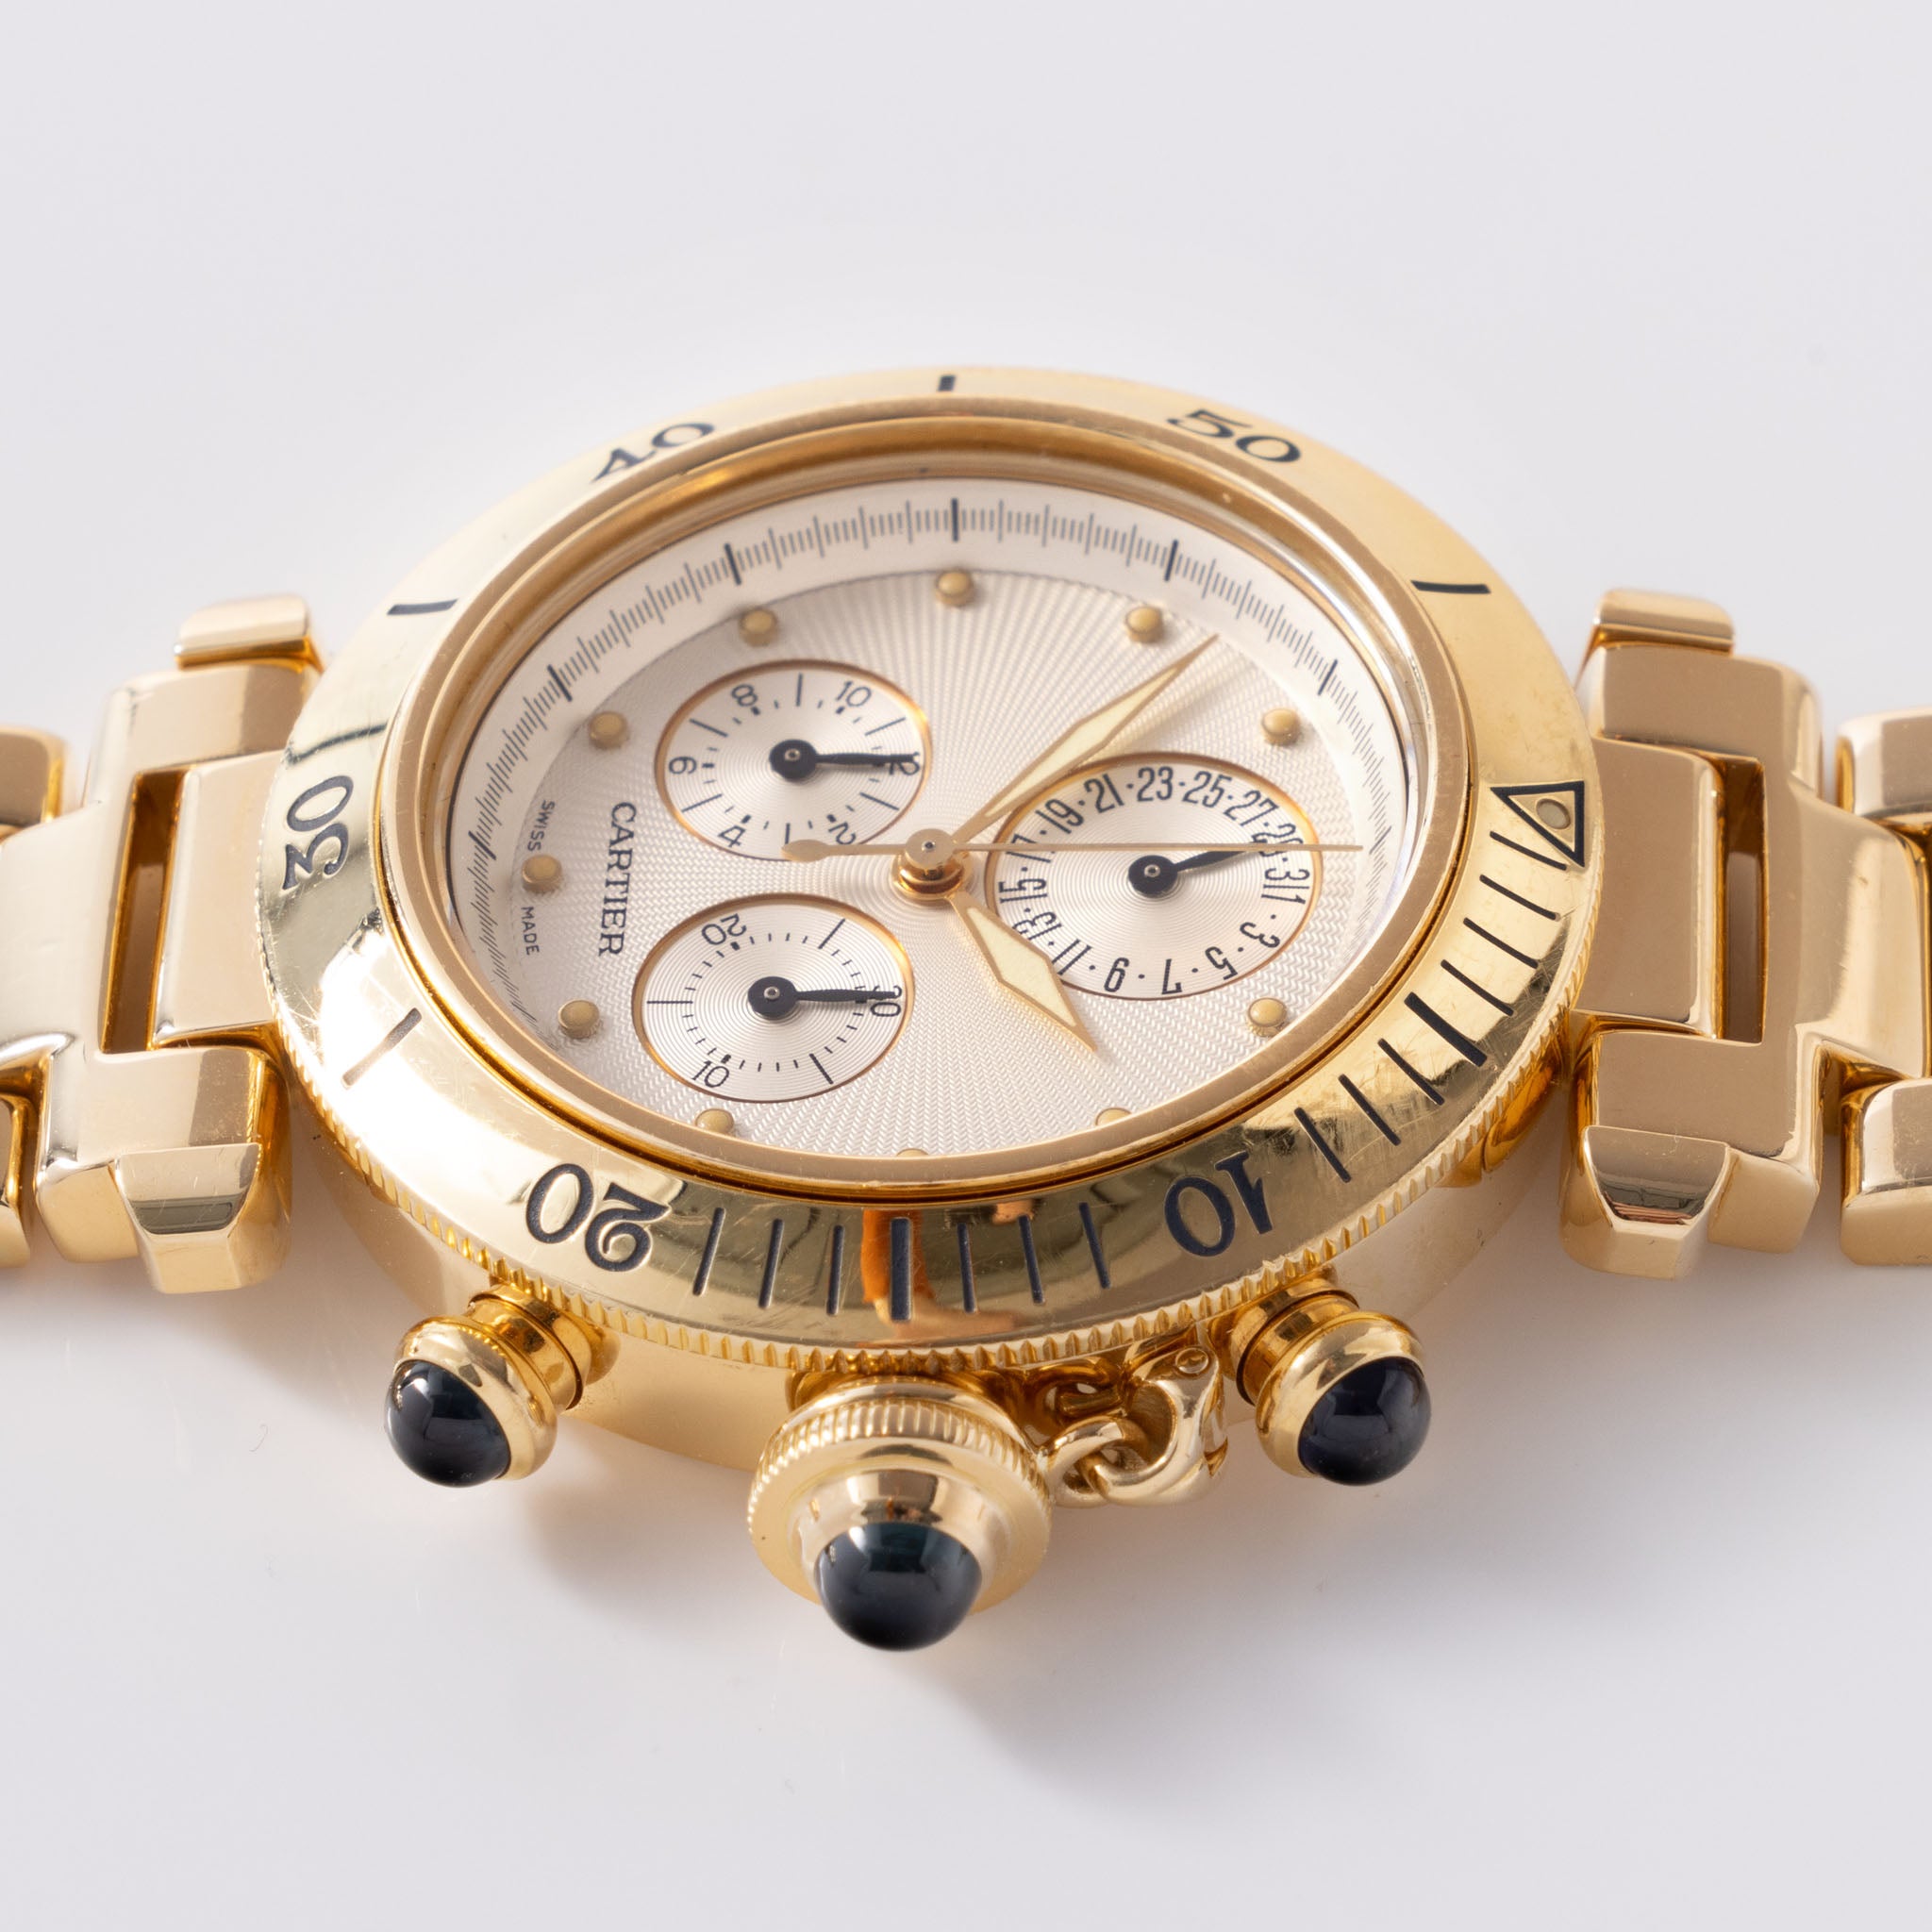 Cartier Pasha Chronograph Referenz 1353 1 18 Karat Gelbgold Box und Service Rechnung